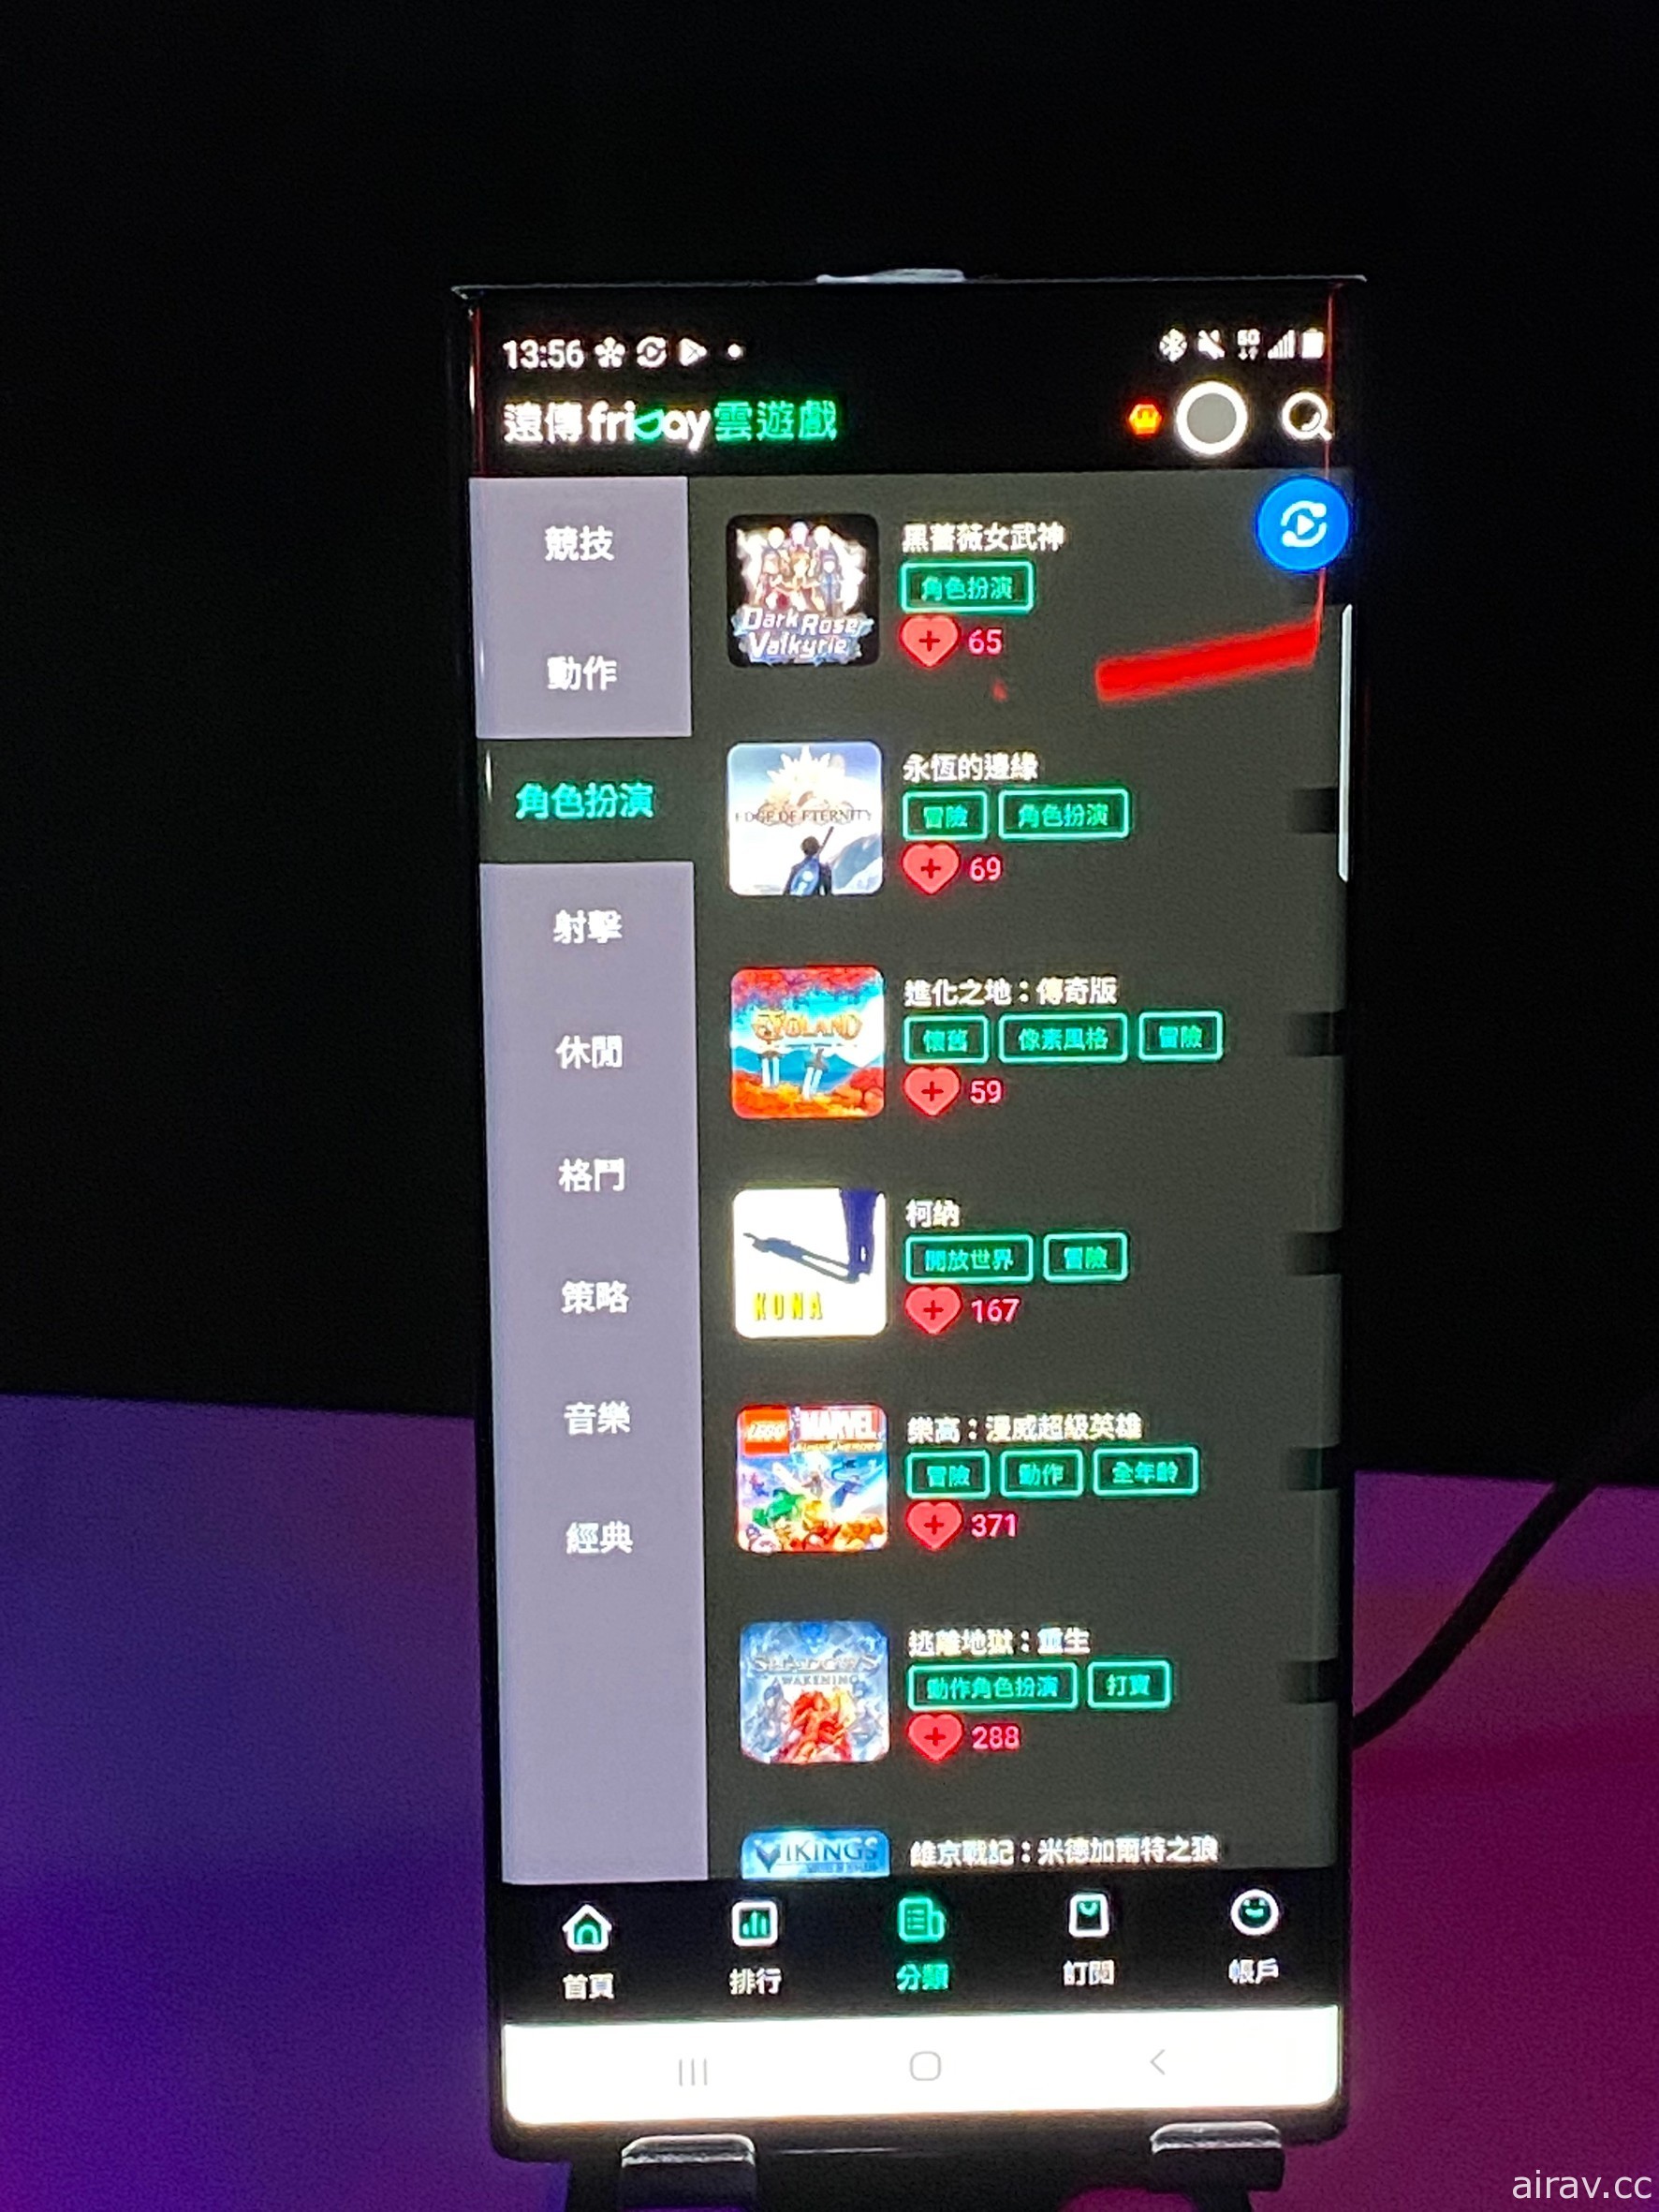 遠傳攜手優必達今起推出遠傳 friDay 雲遊戲服務 宣布早鳥價每月 199 元暢玩遊戲